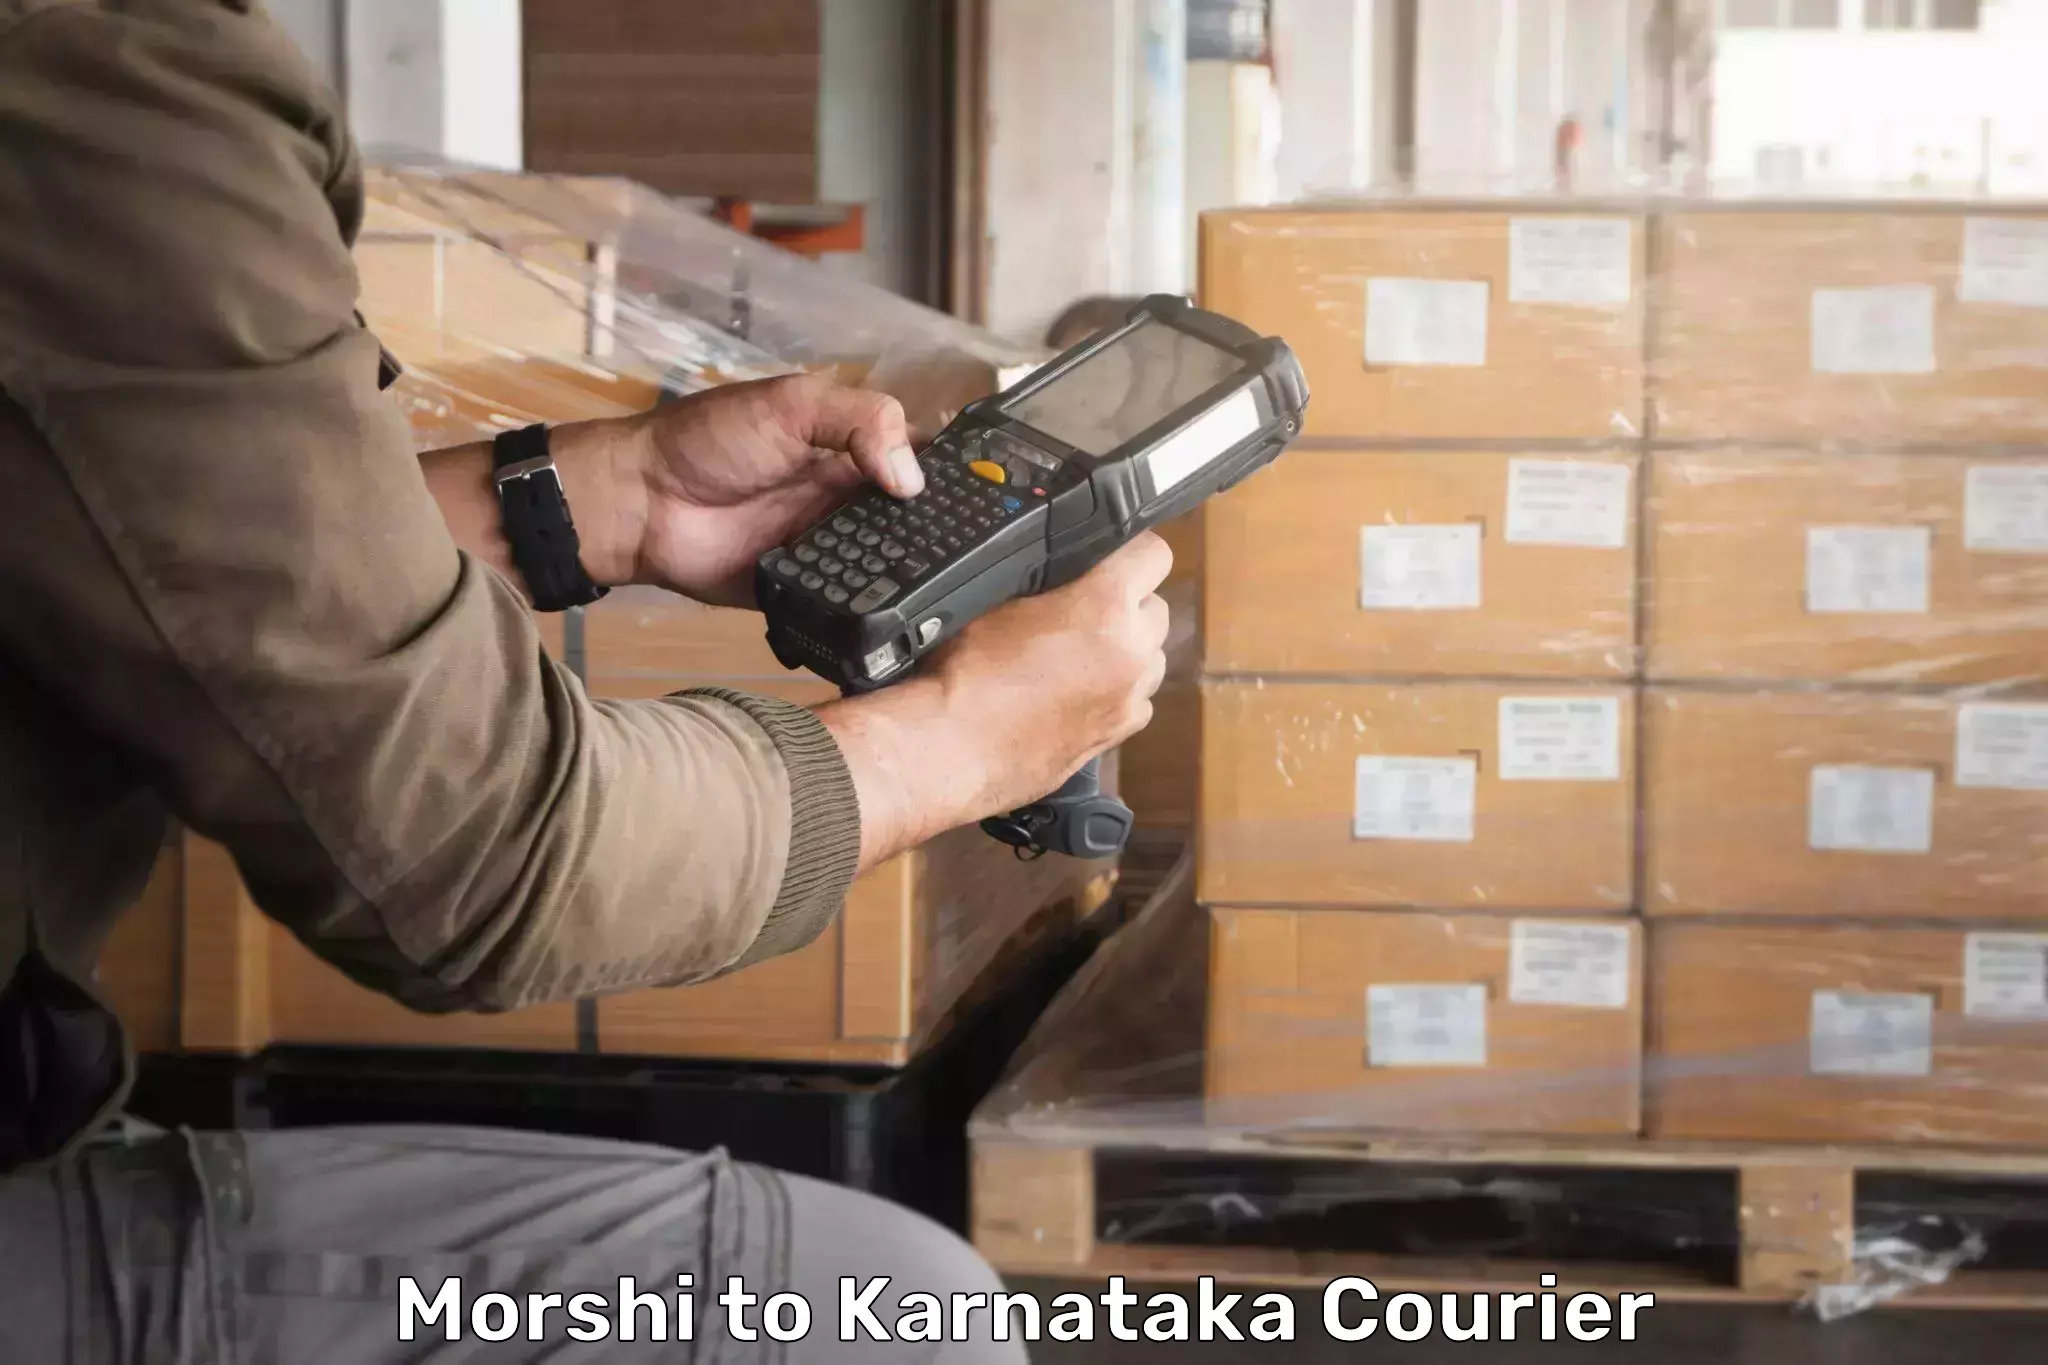 Large package courier Morshi to Kudligi